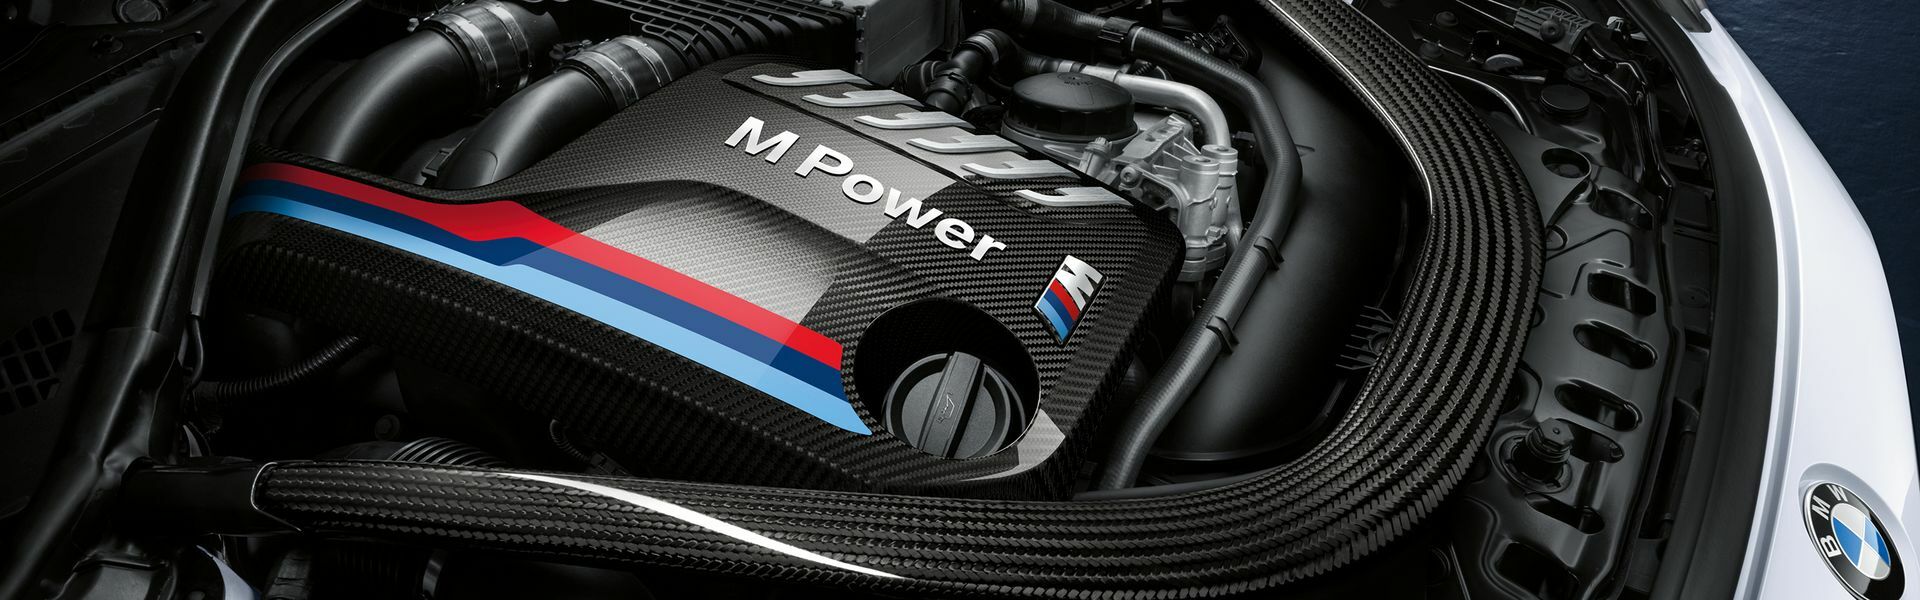 Zvýšení výkonu/ Softwarové úpravy/ Drobné performance díly pro automobil BMW M6 F12, F13